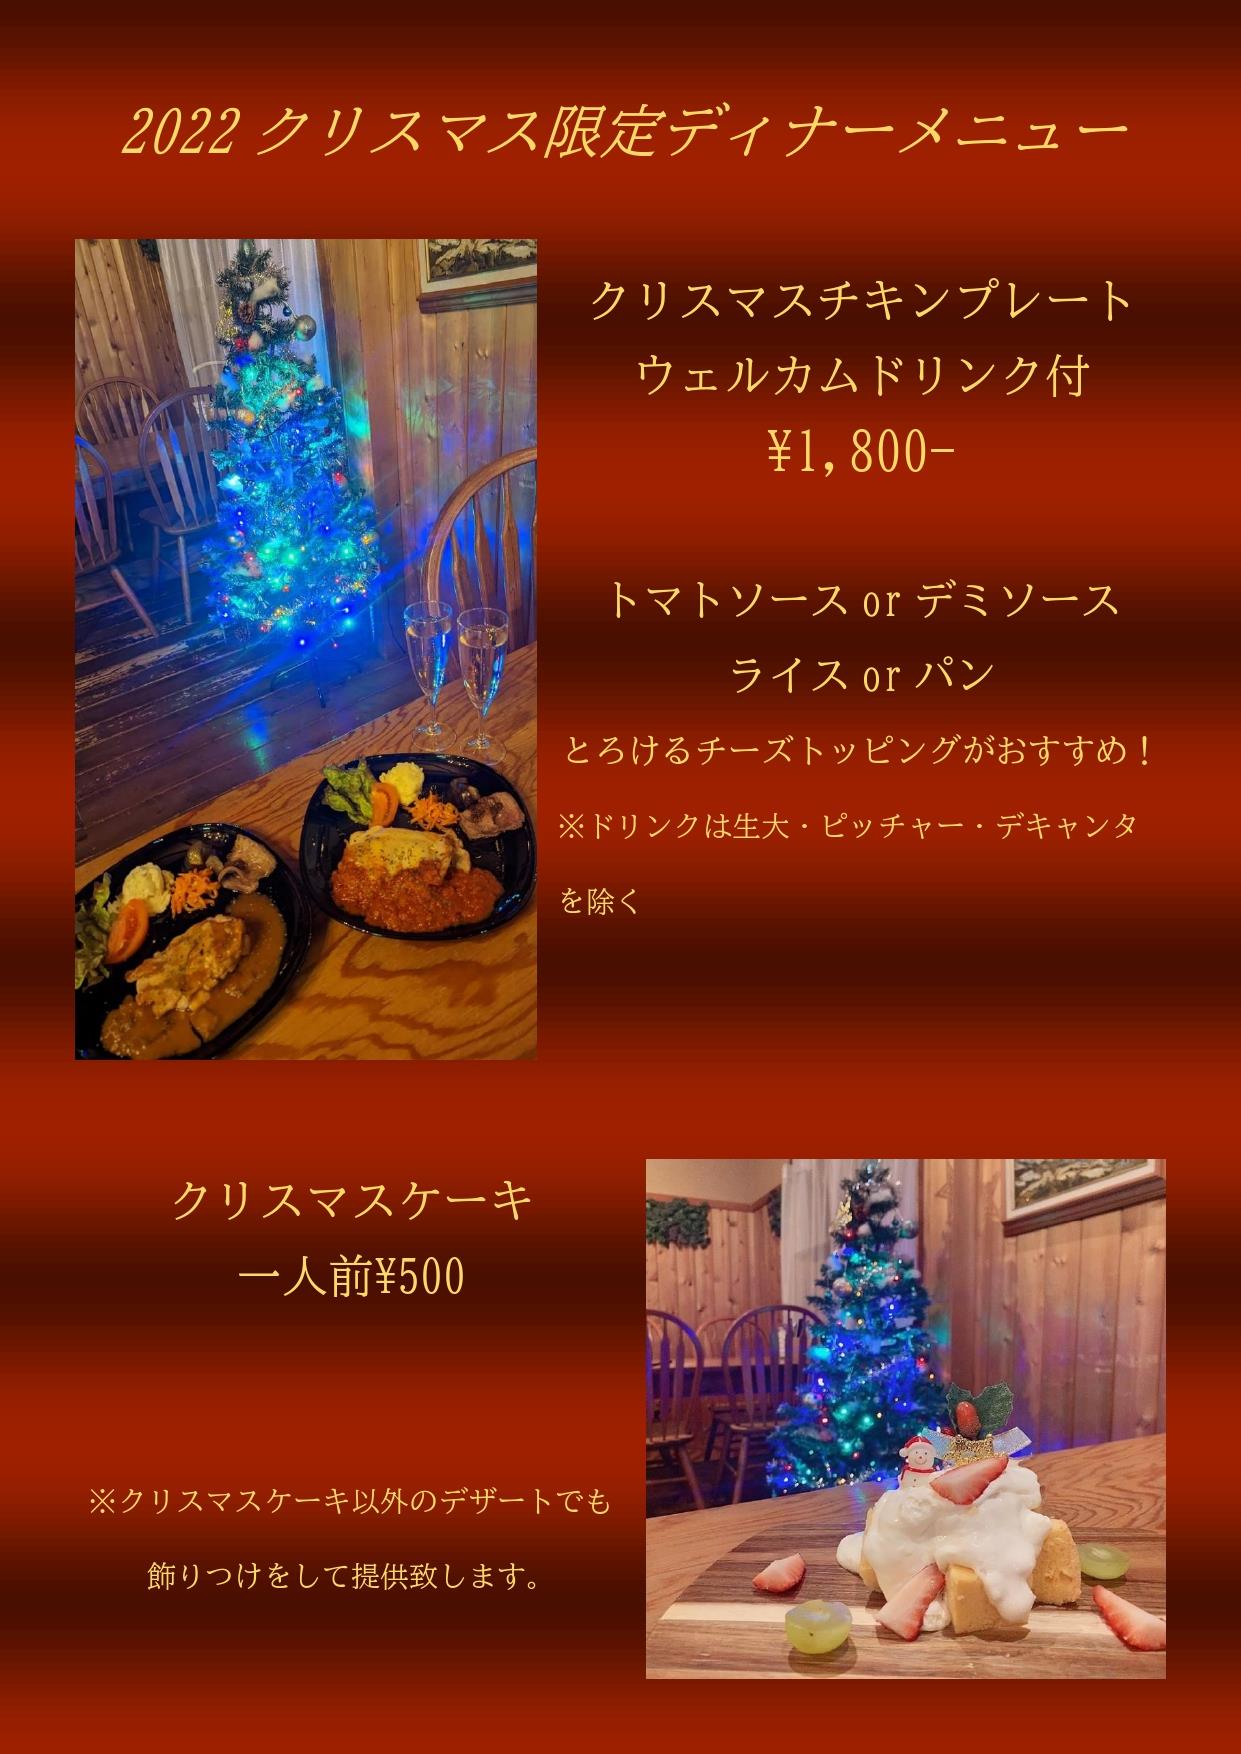 【12/24,25】クリスマス限定ディナーメニューのお知らせ